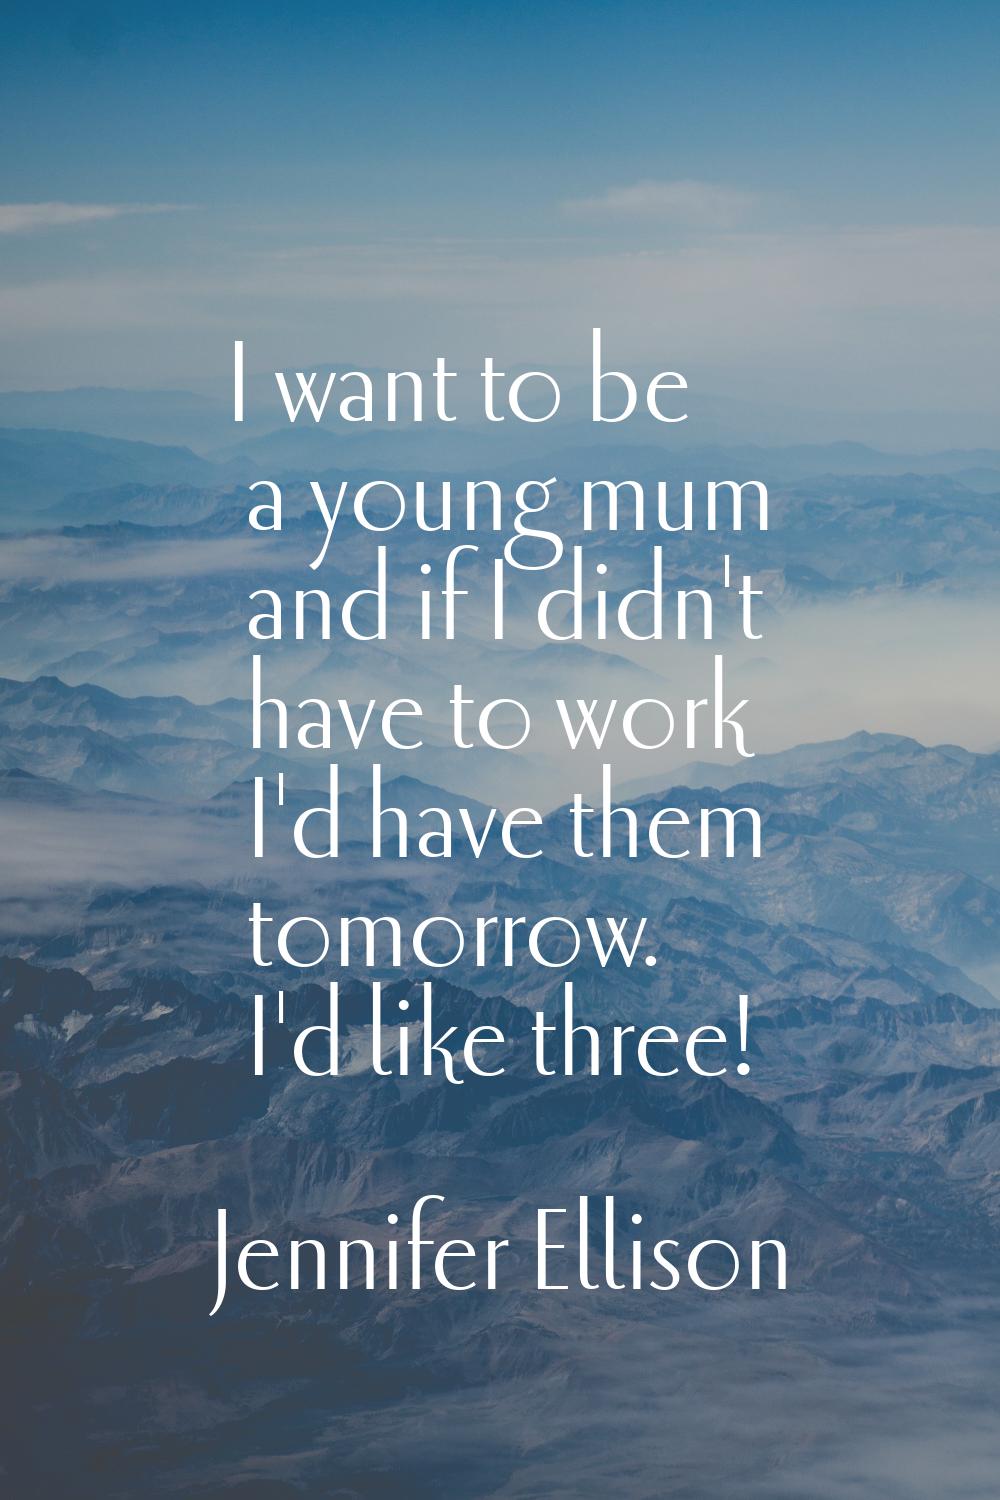 I want to be a young mum and if I didn't have to work I'd have them tomorrow. I'd like three!